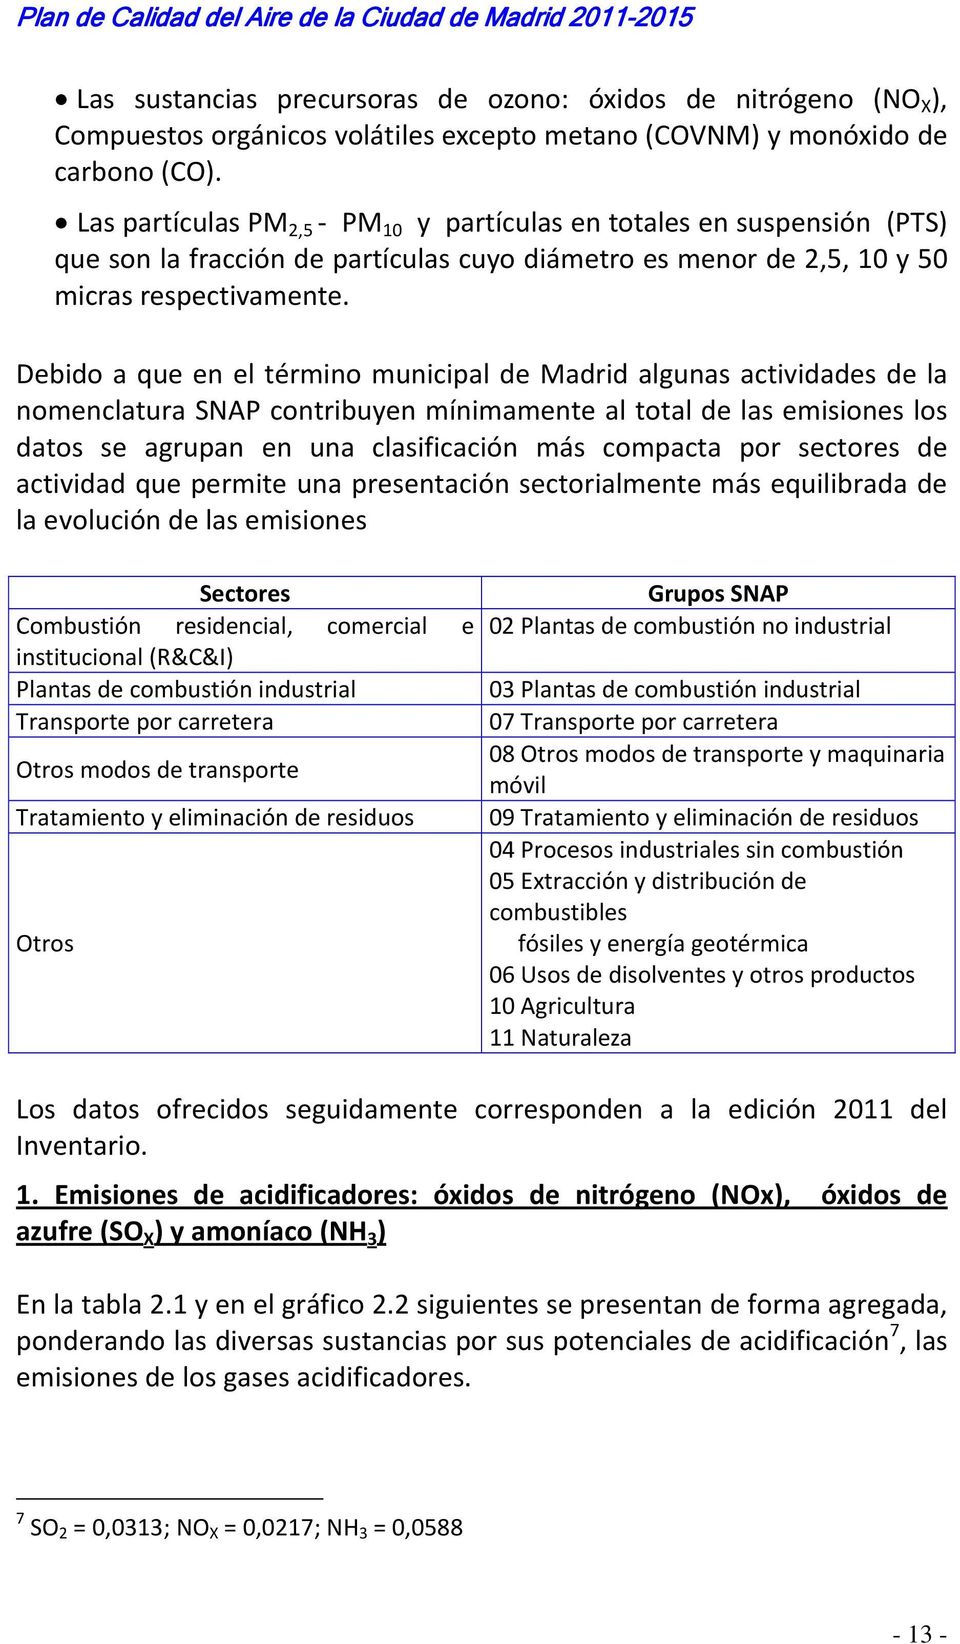 Debido a que en el término municipal de Madrid algunas actividades de la nomenclatura SNAP contribuyen mínimamente al total de las emisiones los datos se agrupan en una clasificación más compacta por